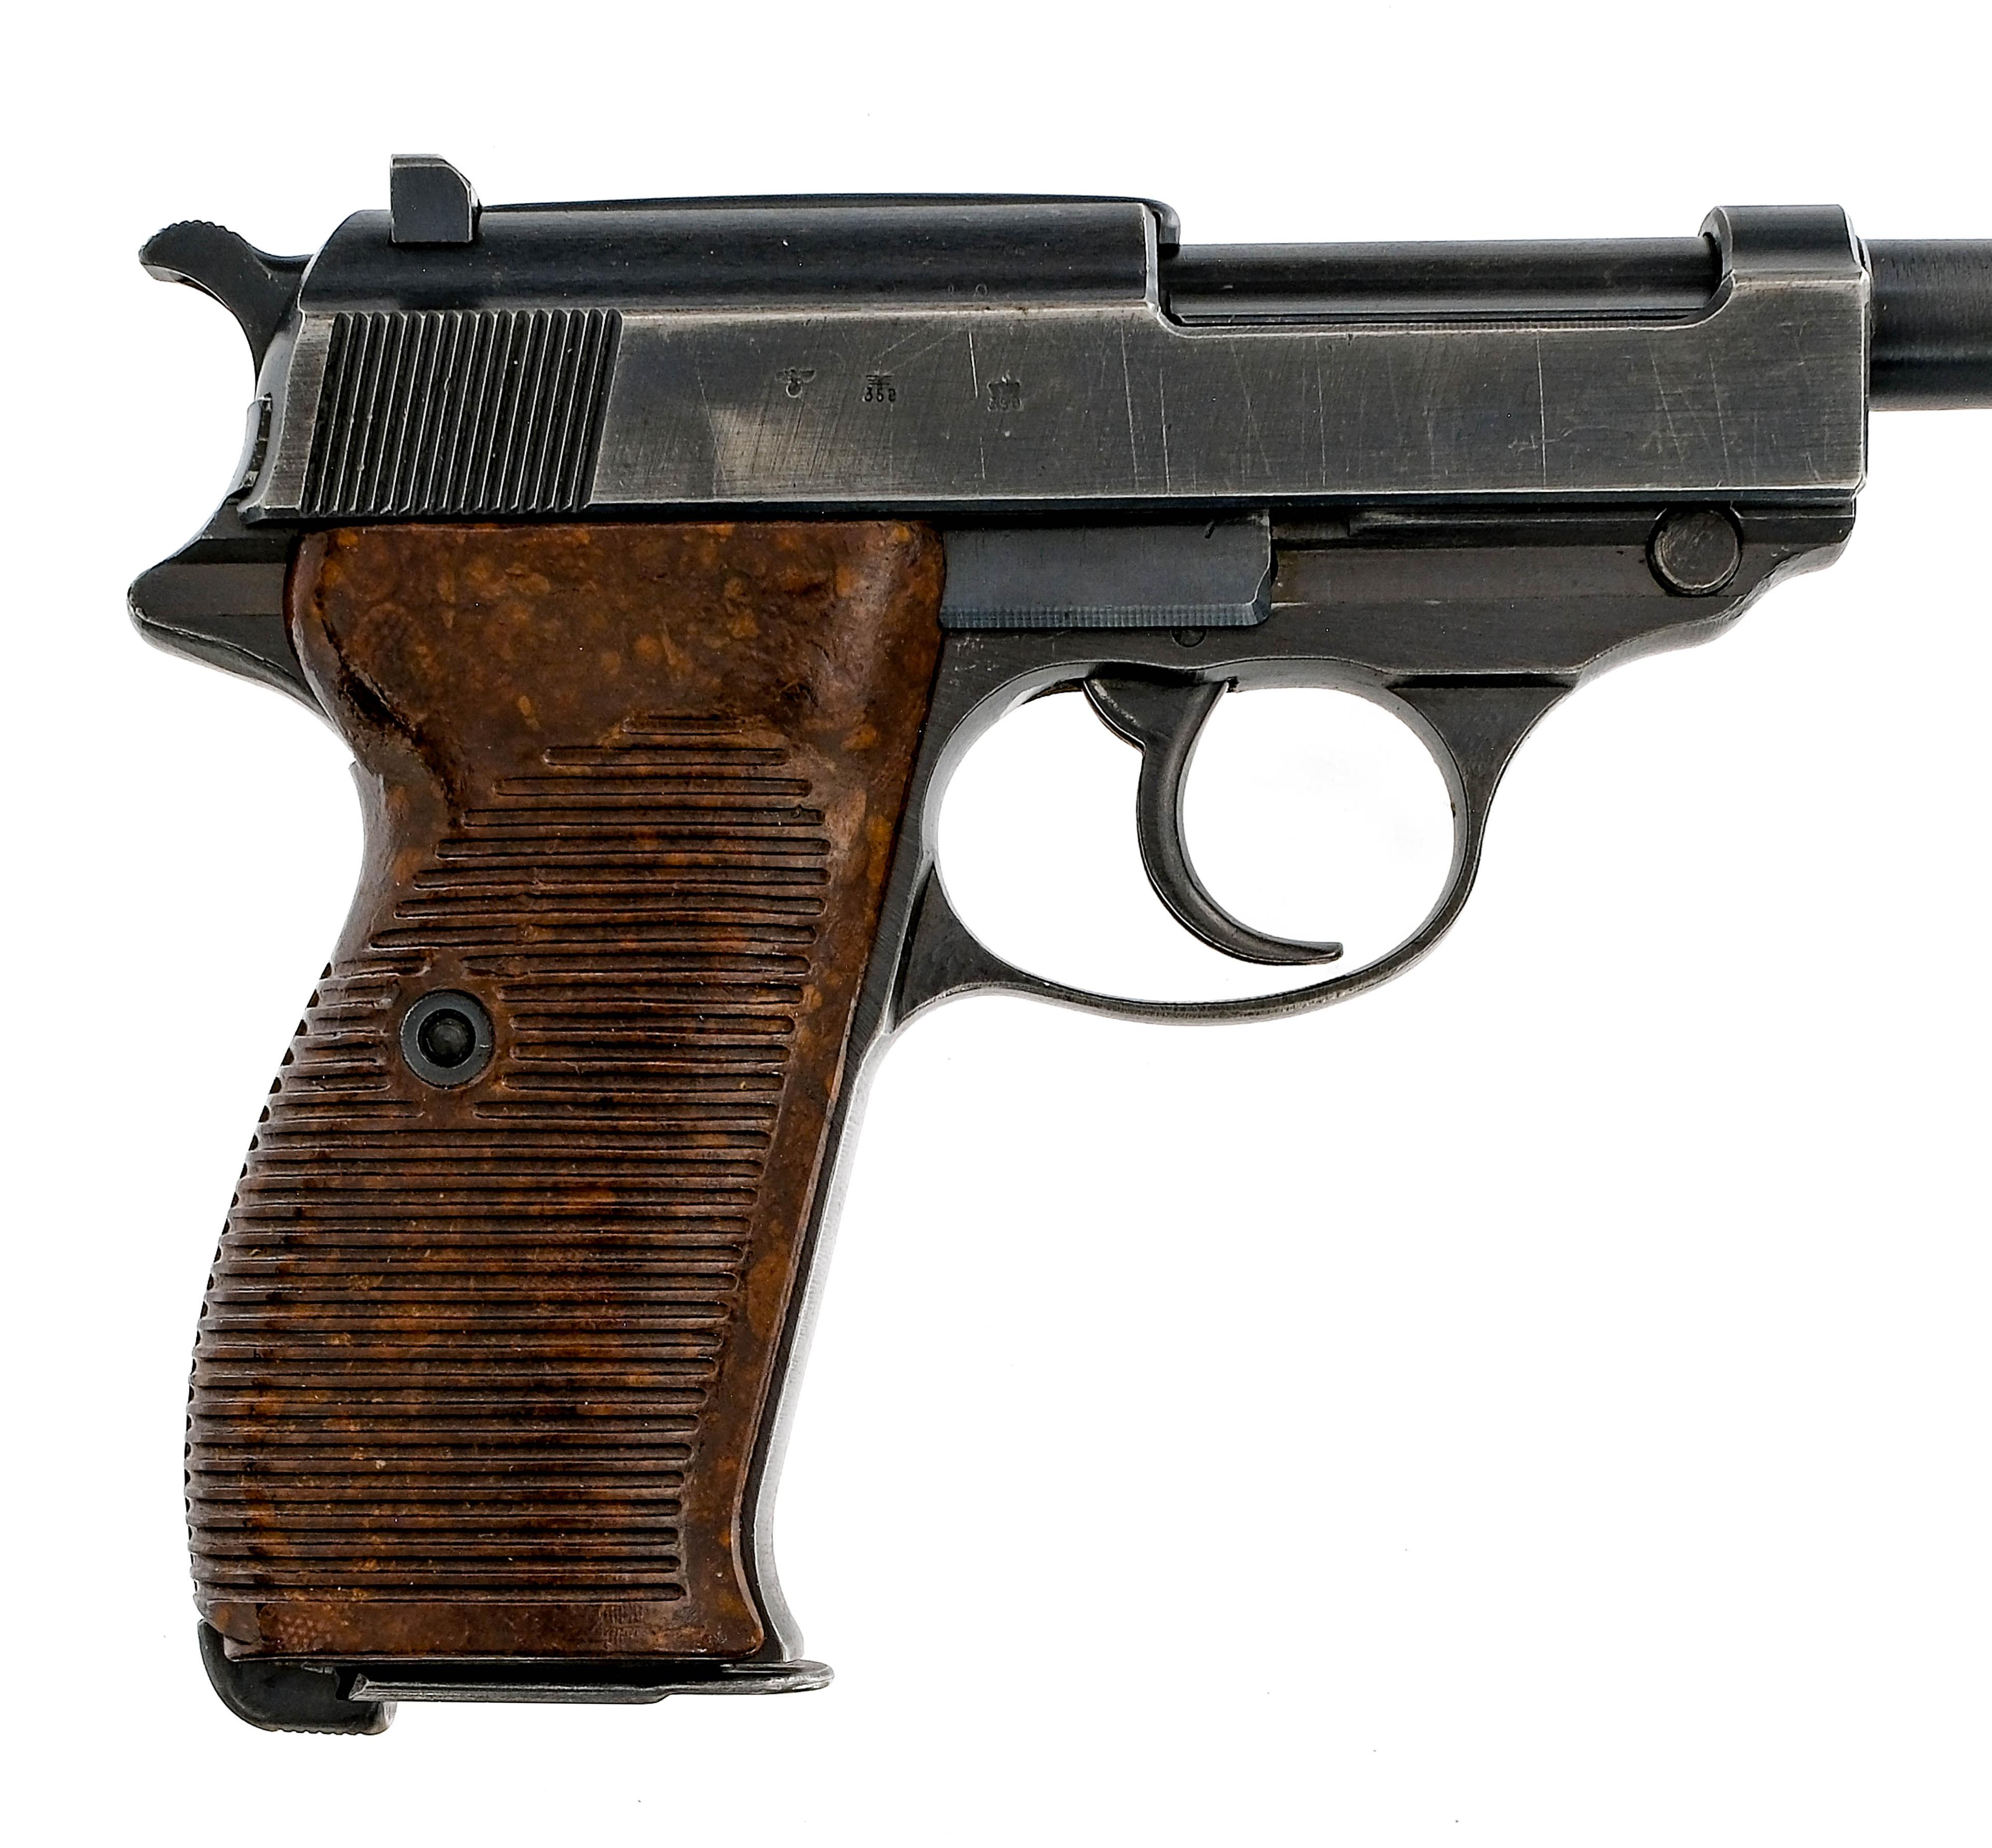 Walther P38 9mm Semi Auto Pistol